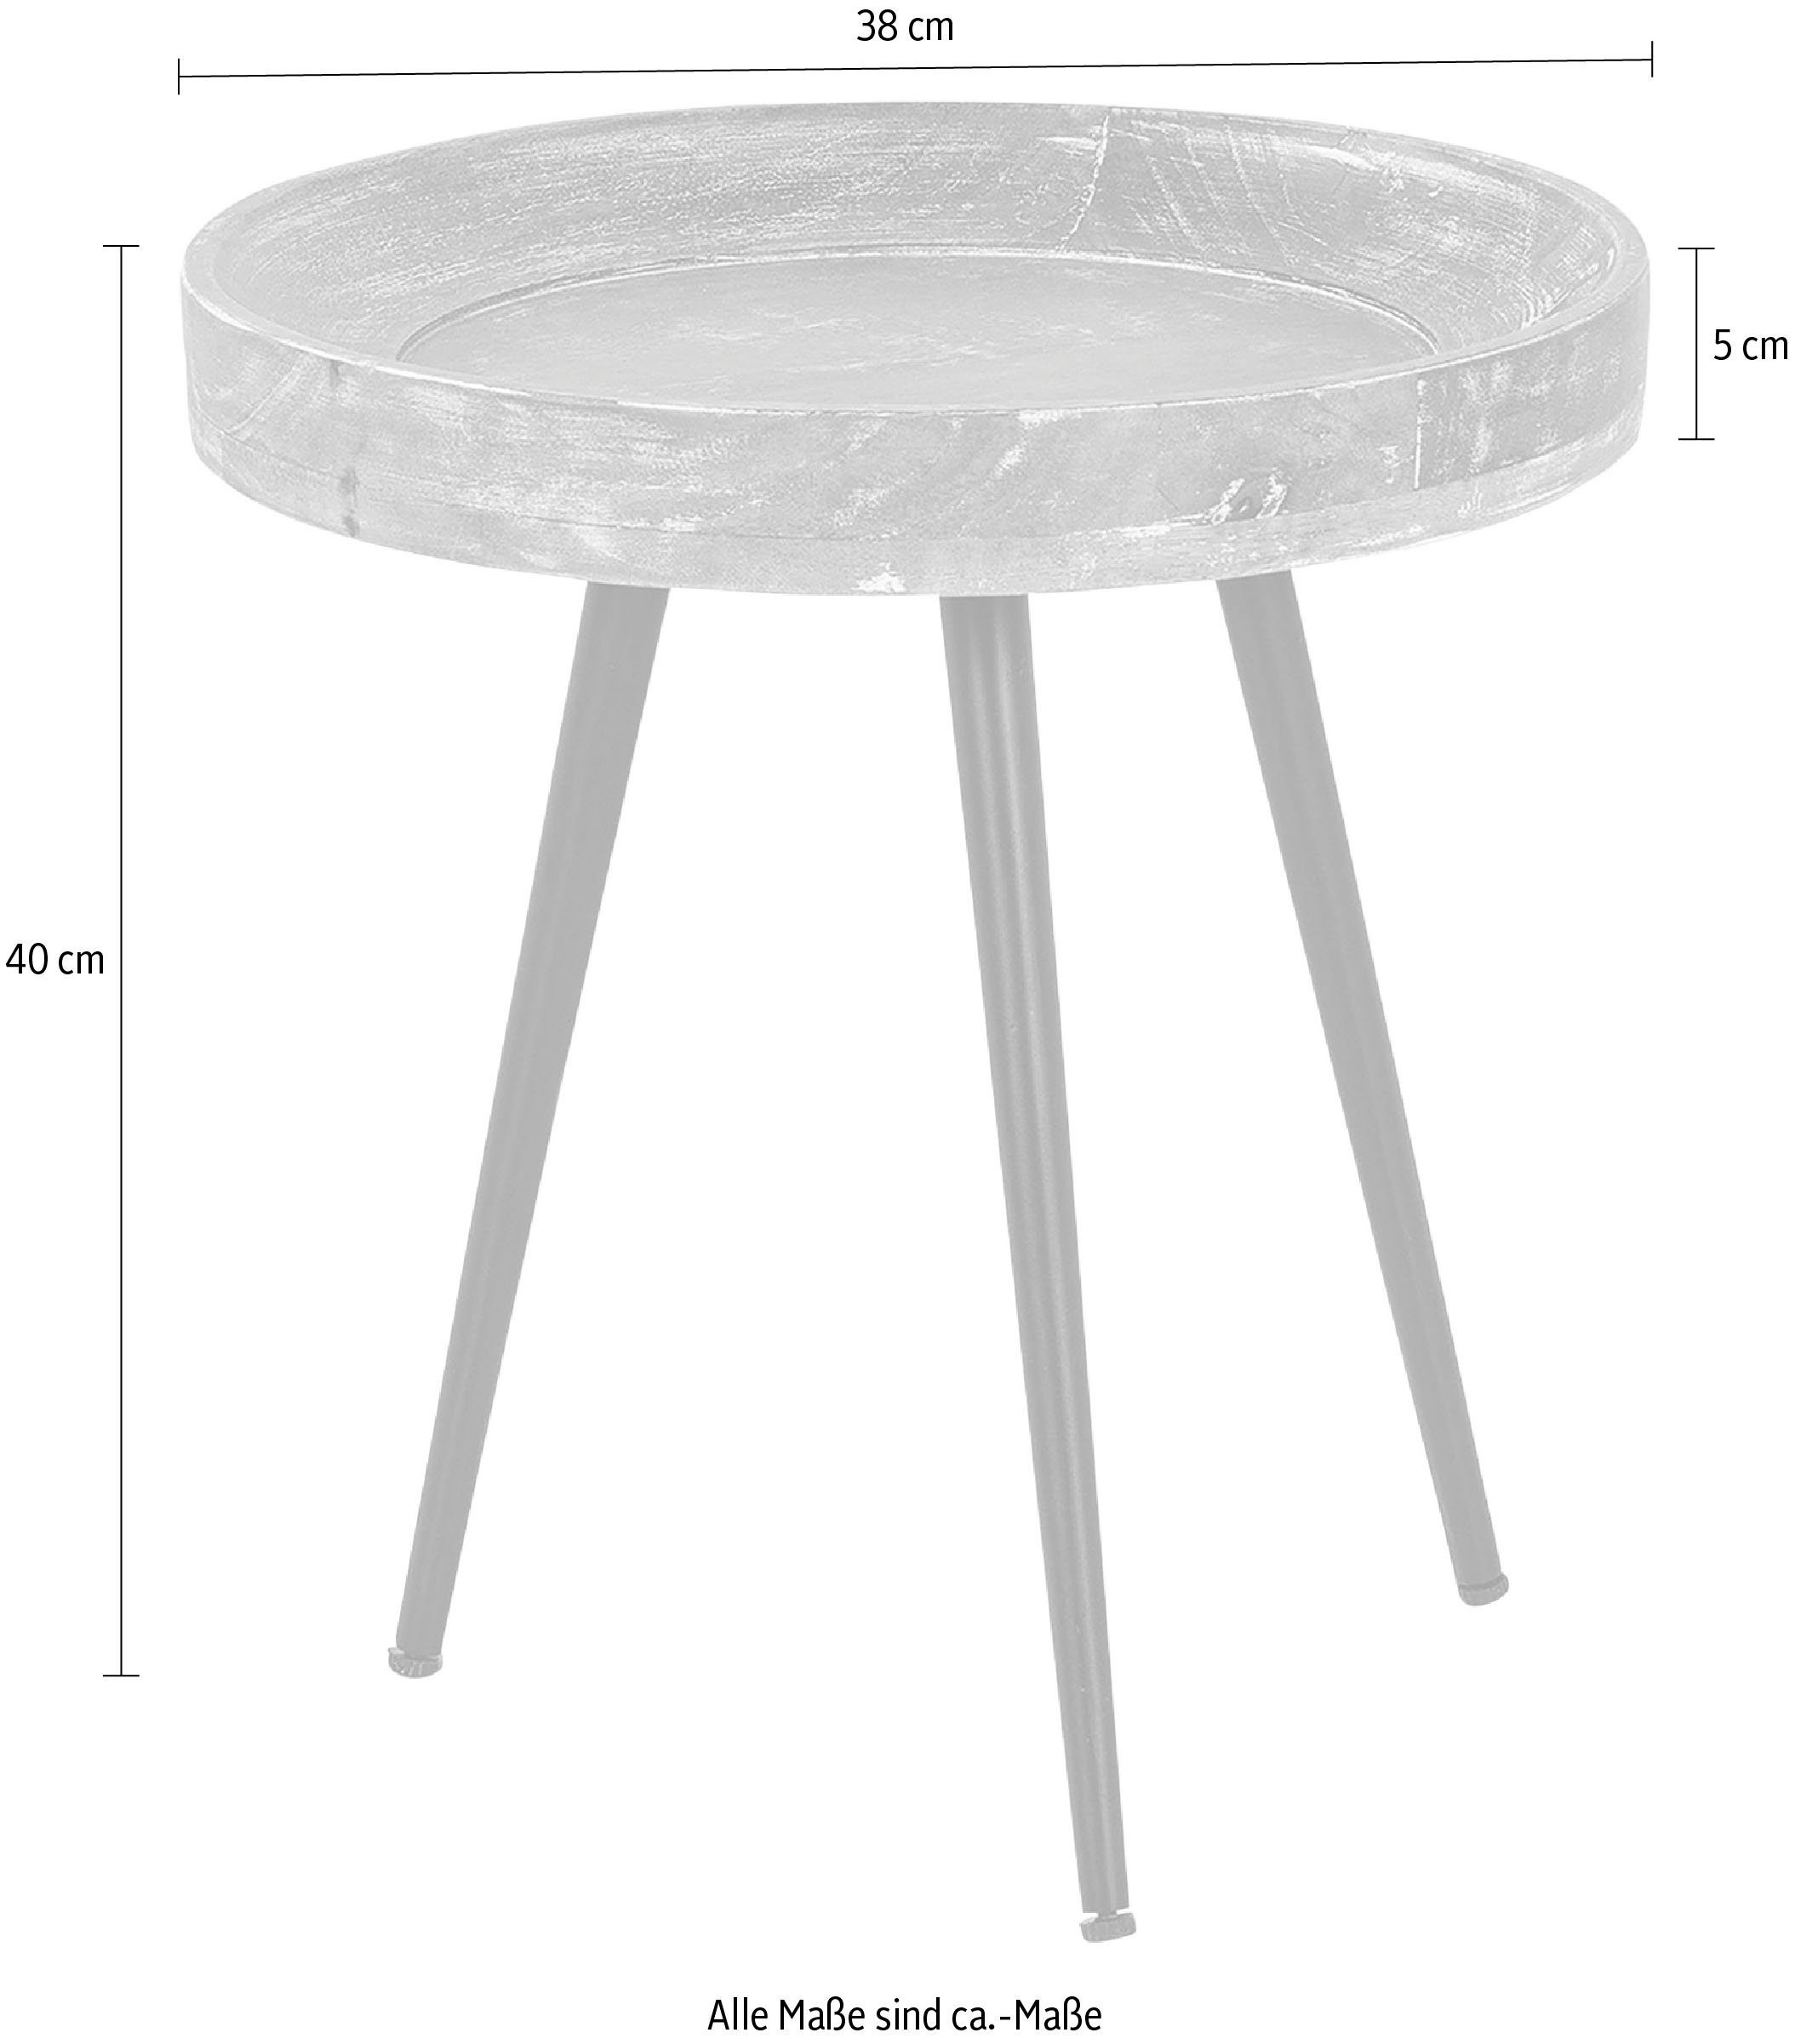 byLIVING Beistelltisch runde Tischplatte, Ava, 38 oder cm Durchmesser Massive 45